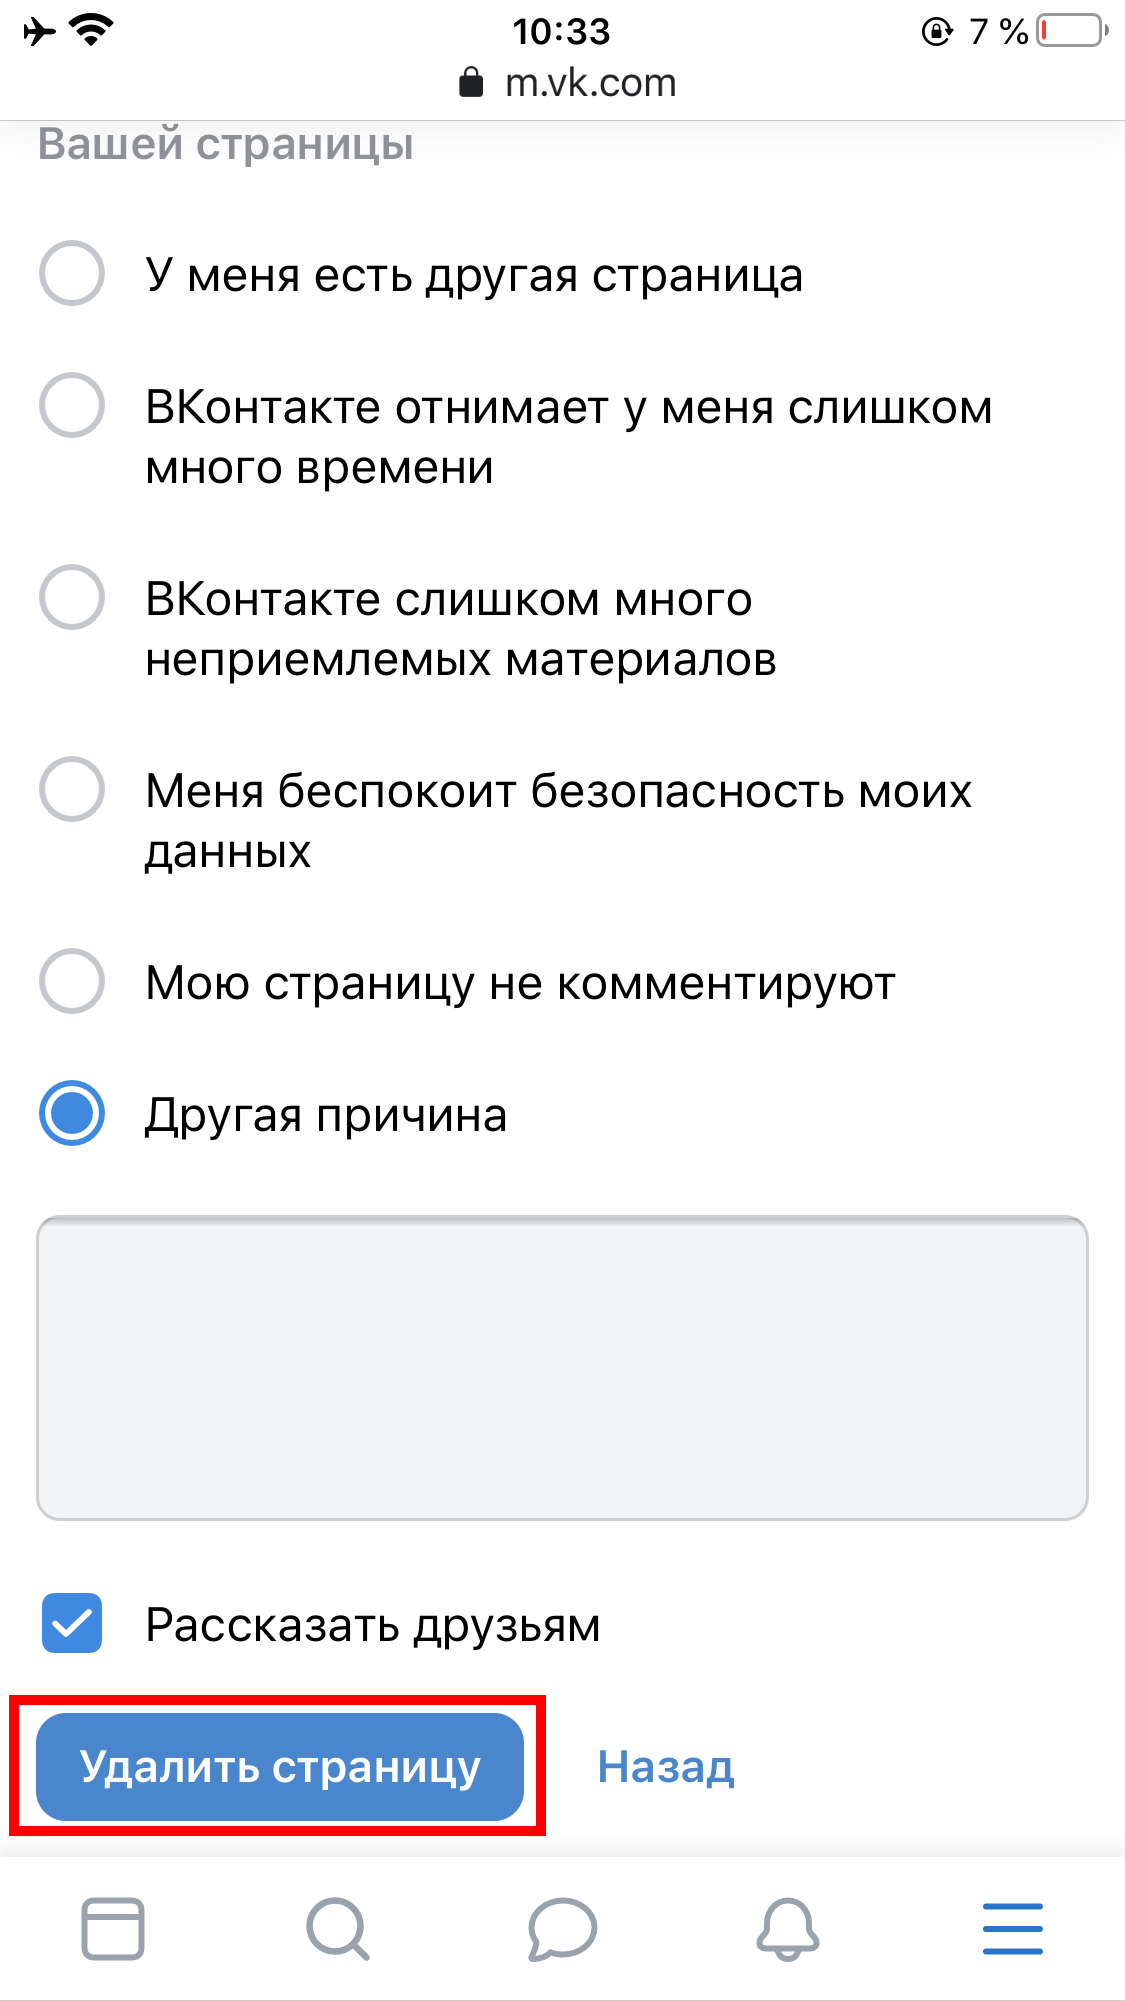 Нужна помощь, если не получается зайти в ВКонтакте